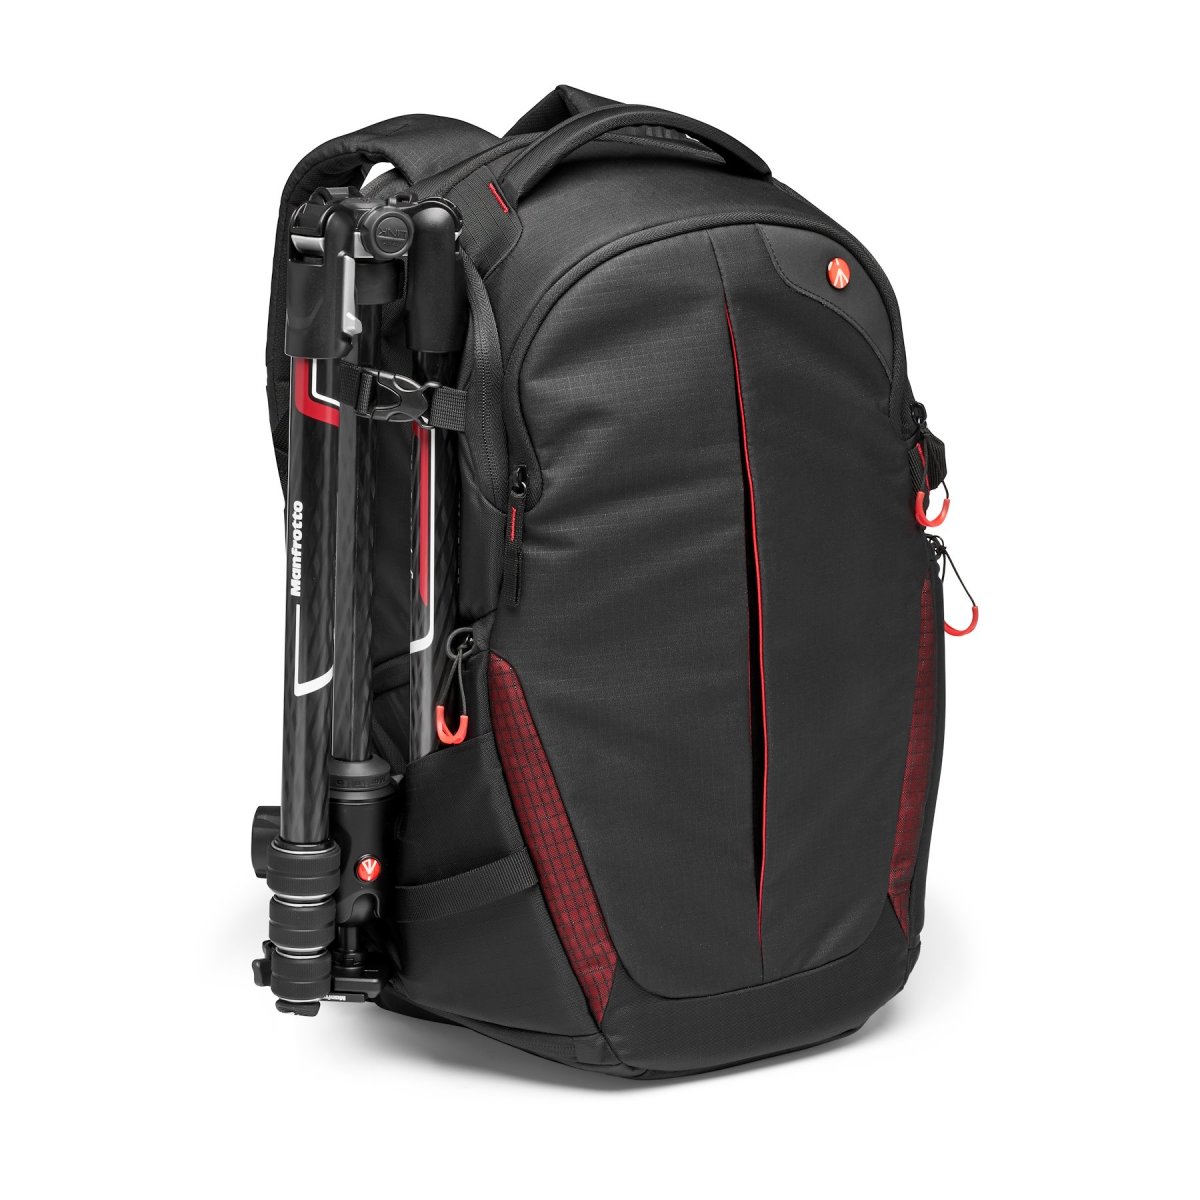 Fotobatoh Manfrotto Pro Light backpack RedBee-310 pro DSLRc nebo dron DJI Mavic series se stativem